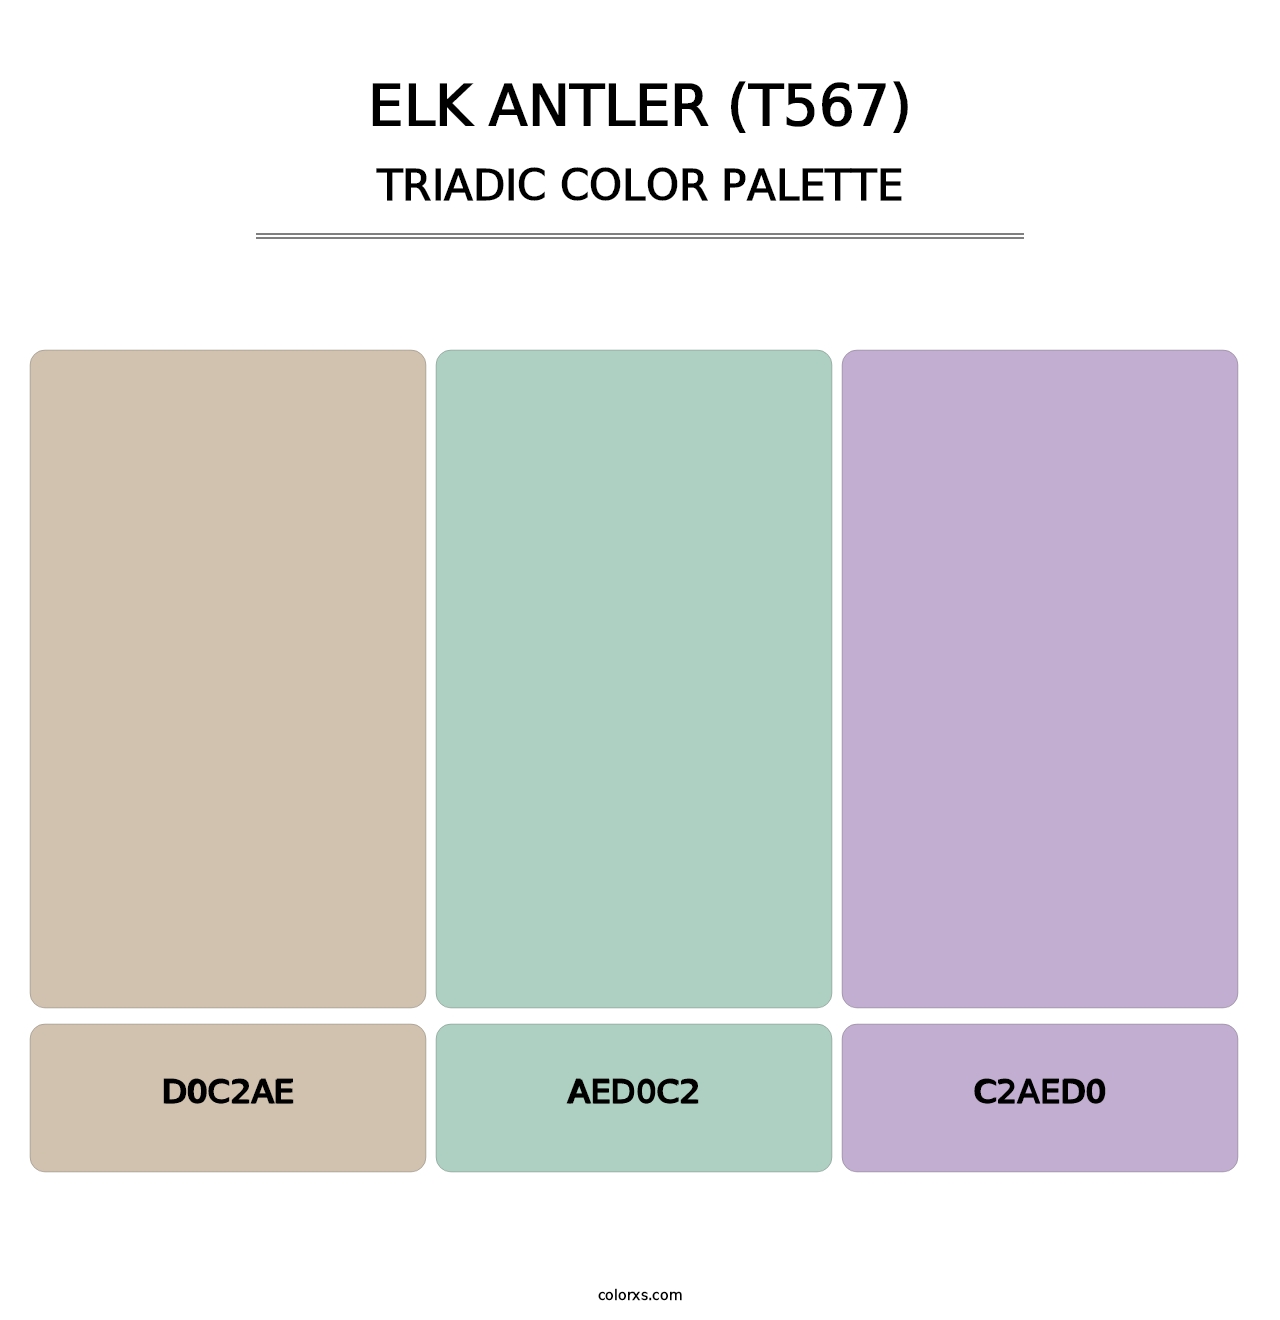 Elk Antler (T567) - Triadic Color Palette